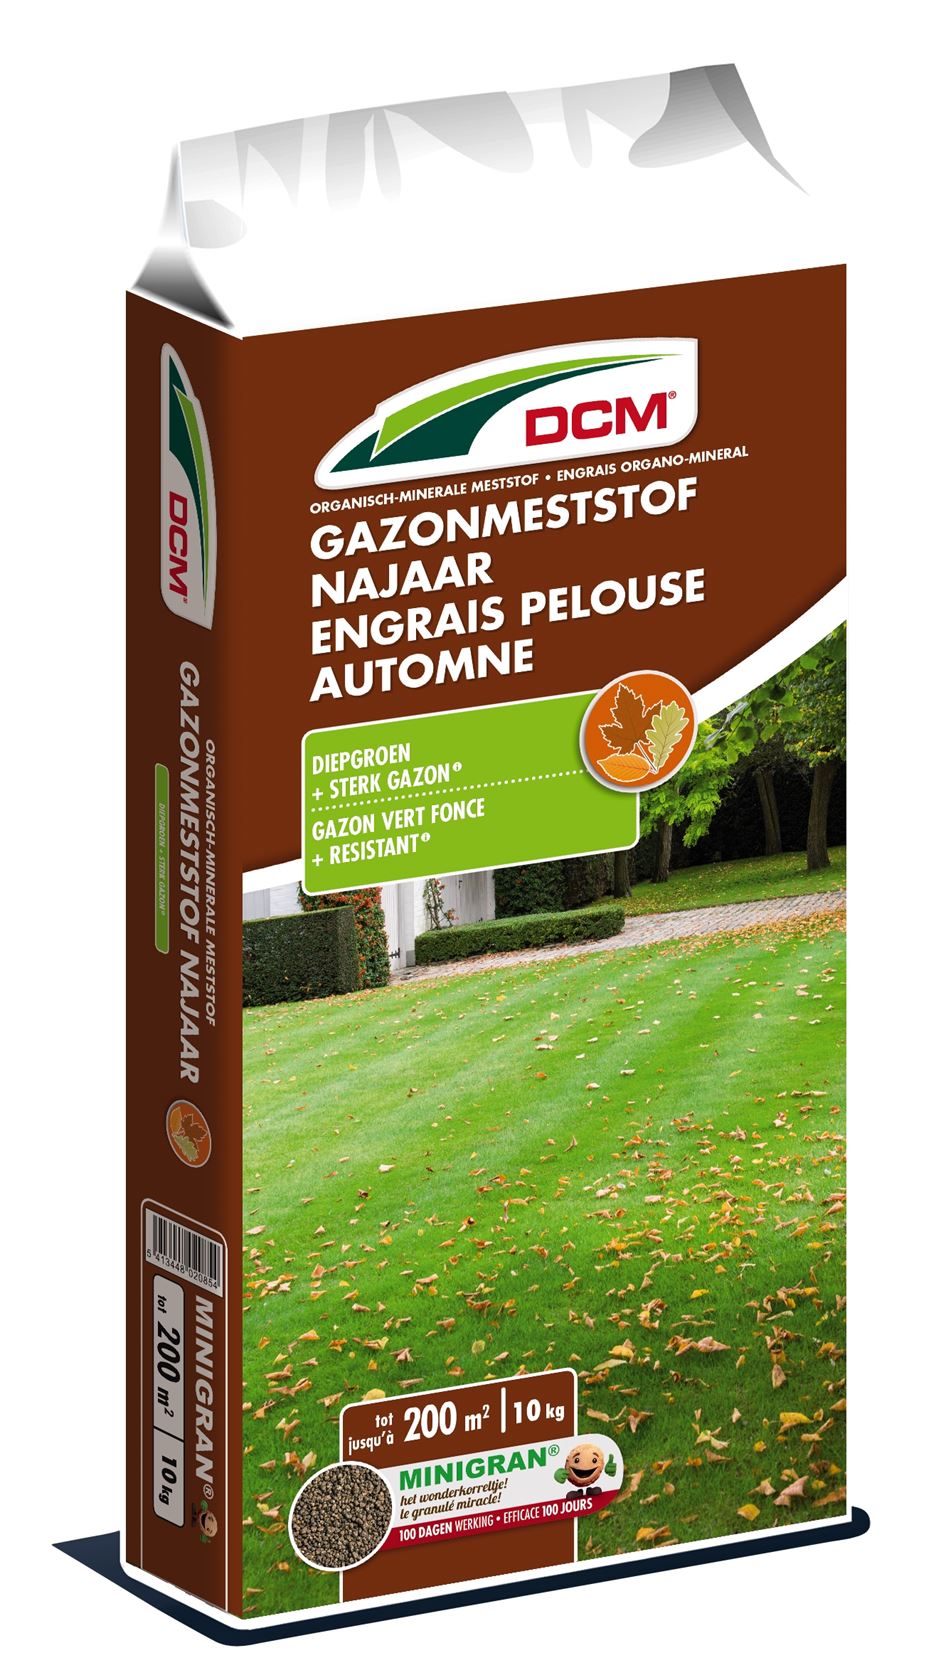 DCM Lawn fertilizer autumn - 10kg for 200m²